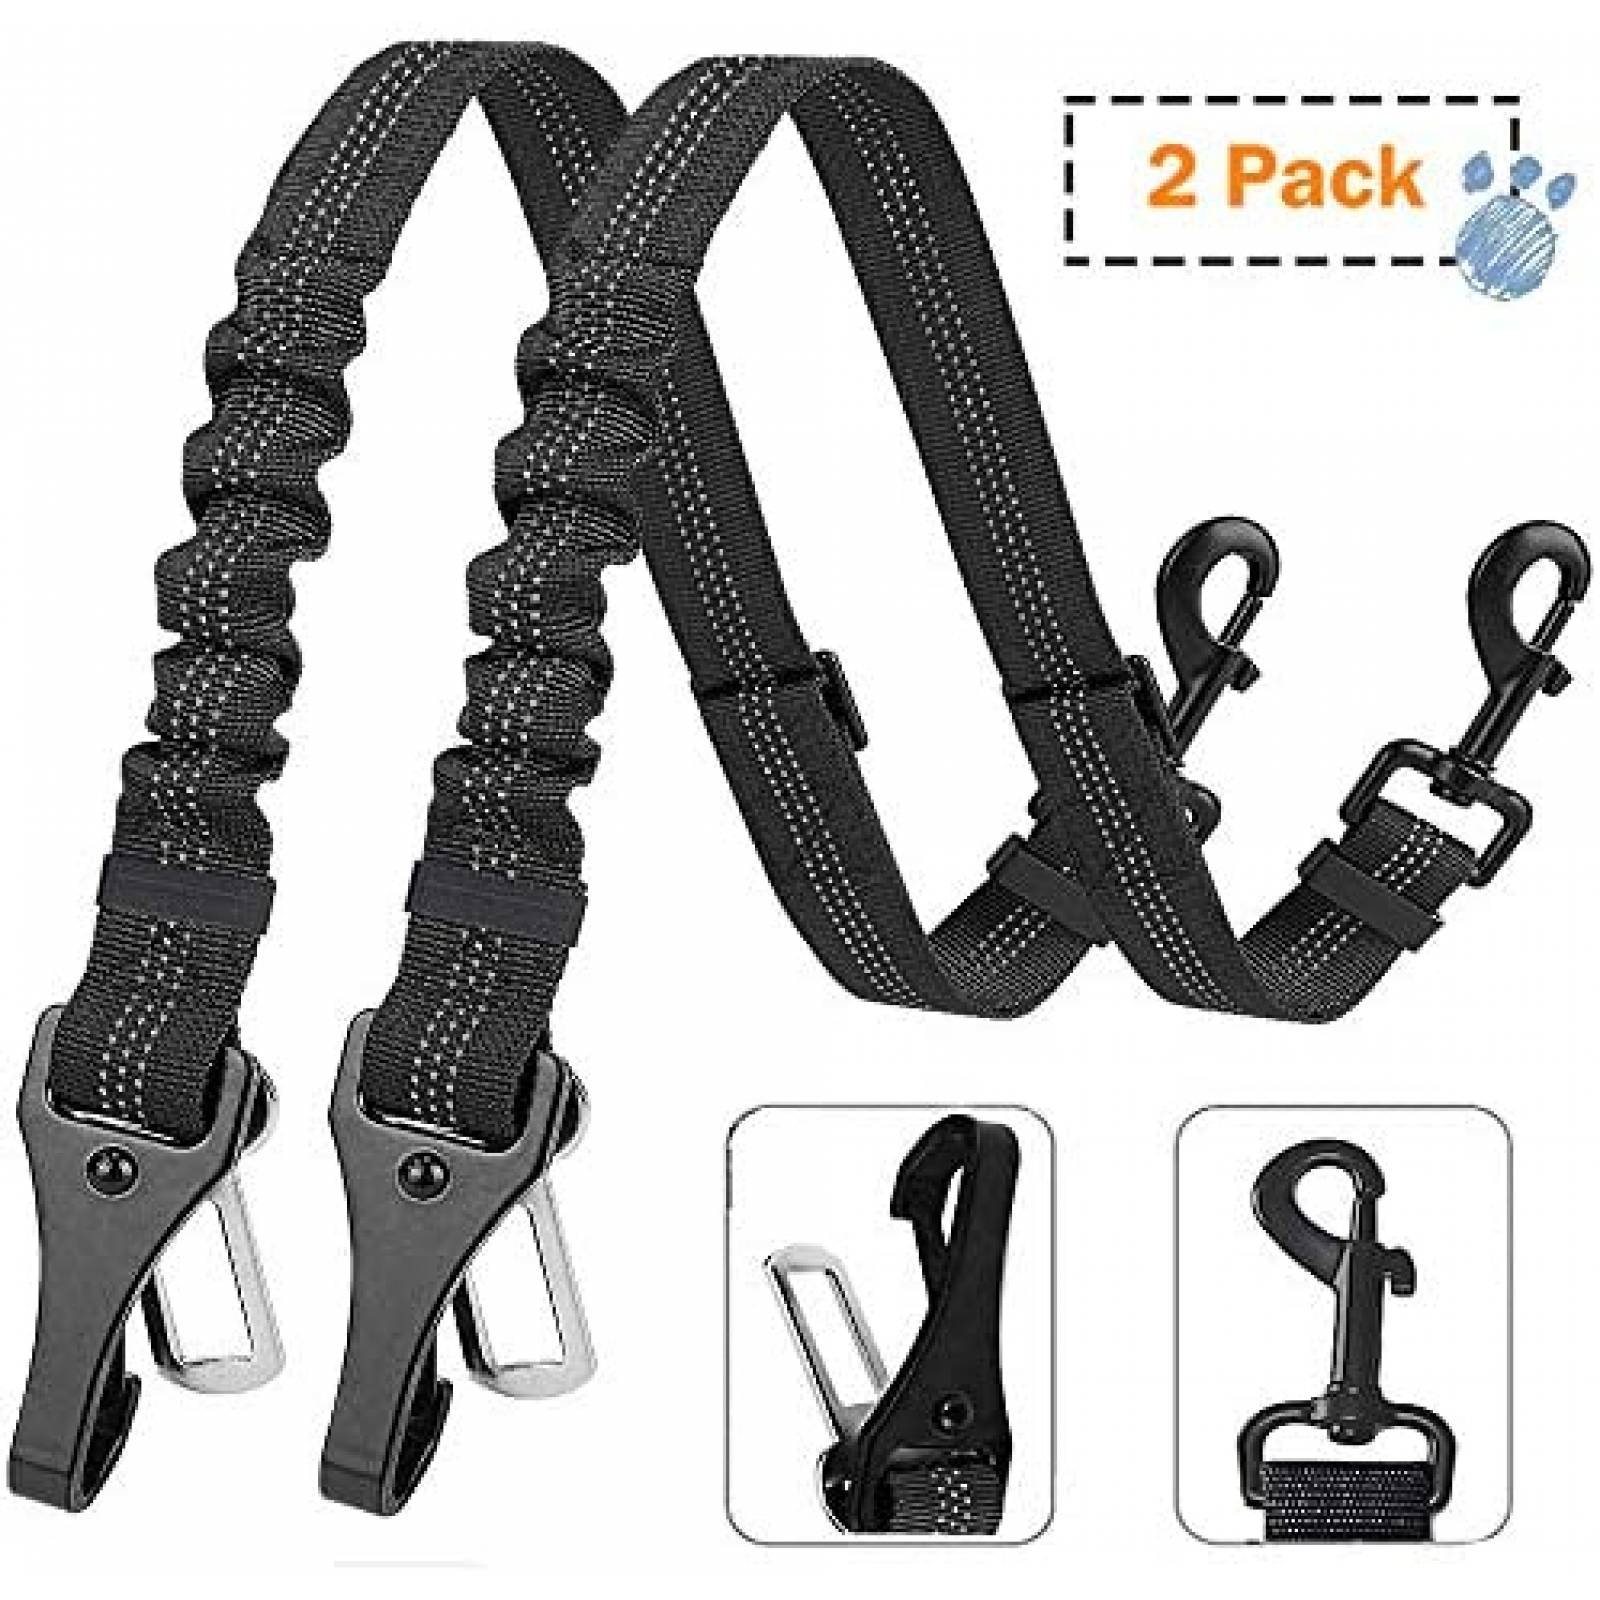 2 Cinturones de Seguridad XIRGS Nylon para Perros -Negros